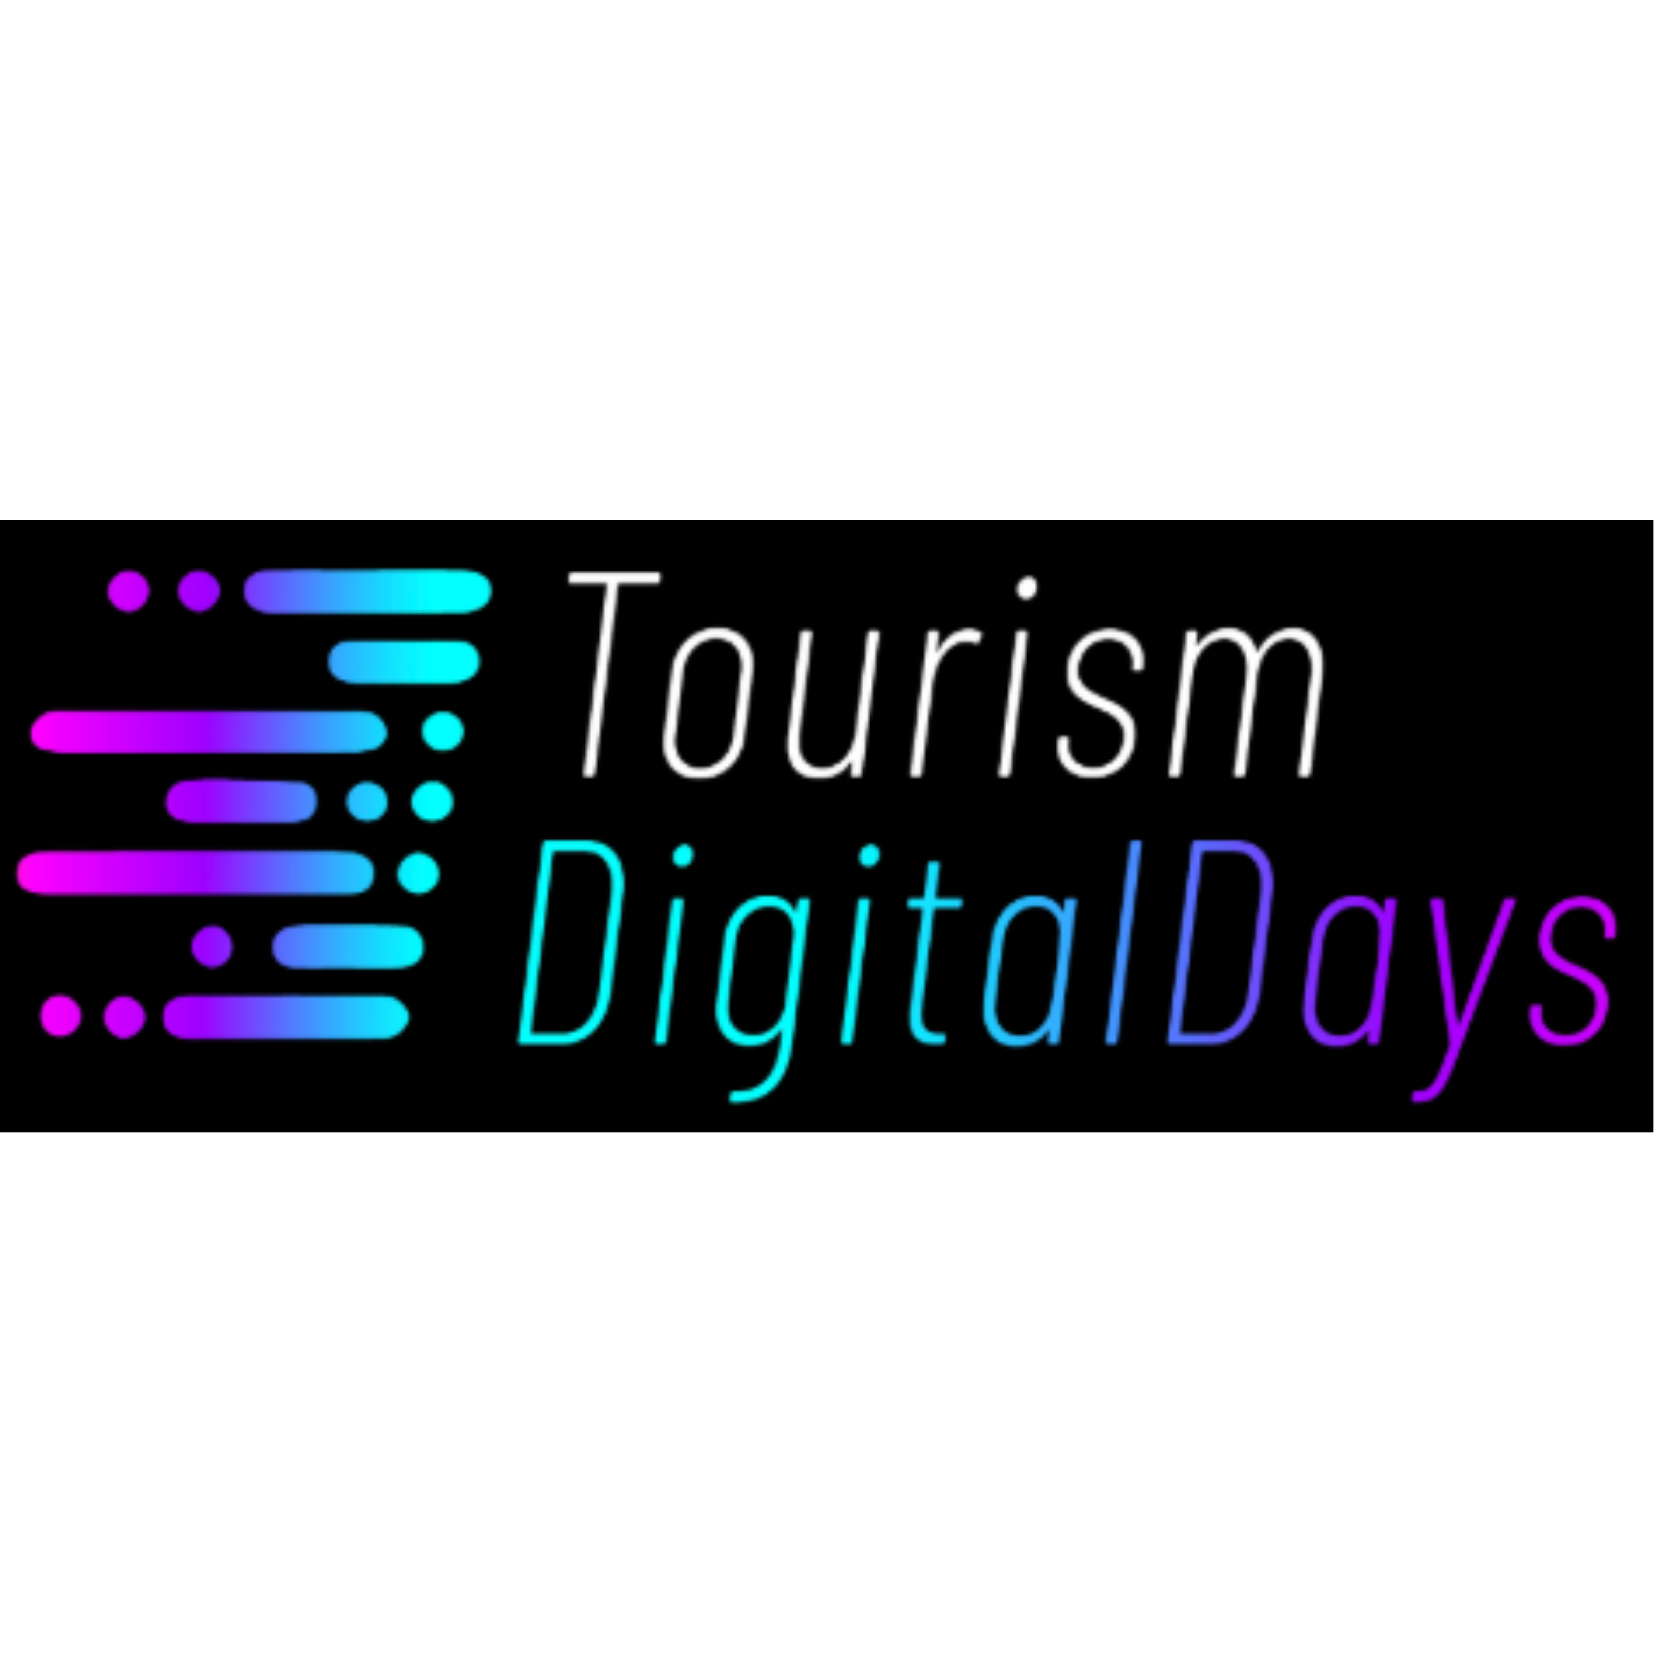 Tourism Digital Days